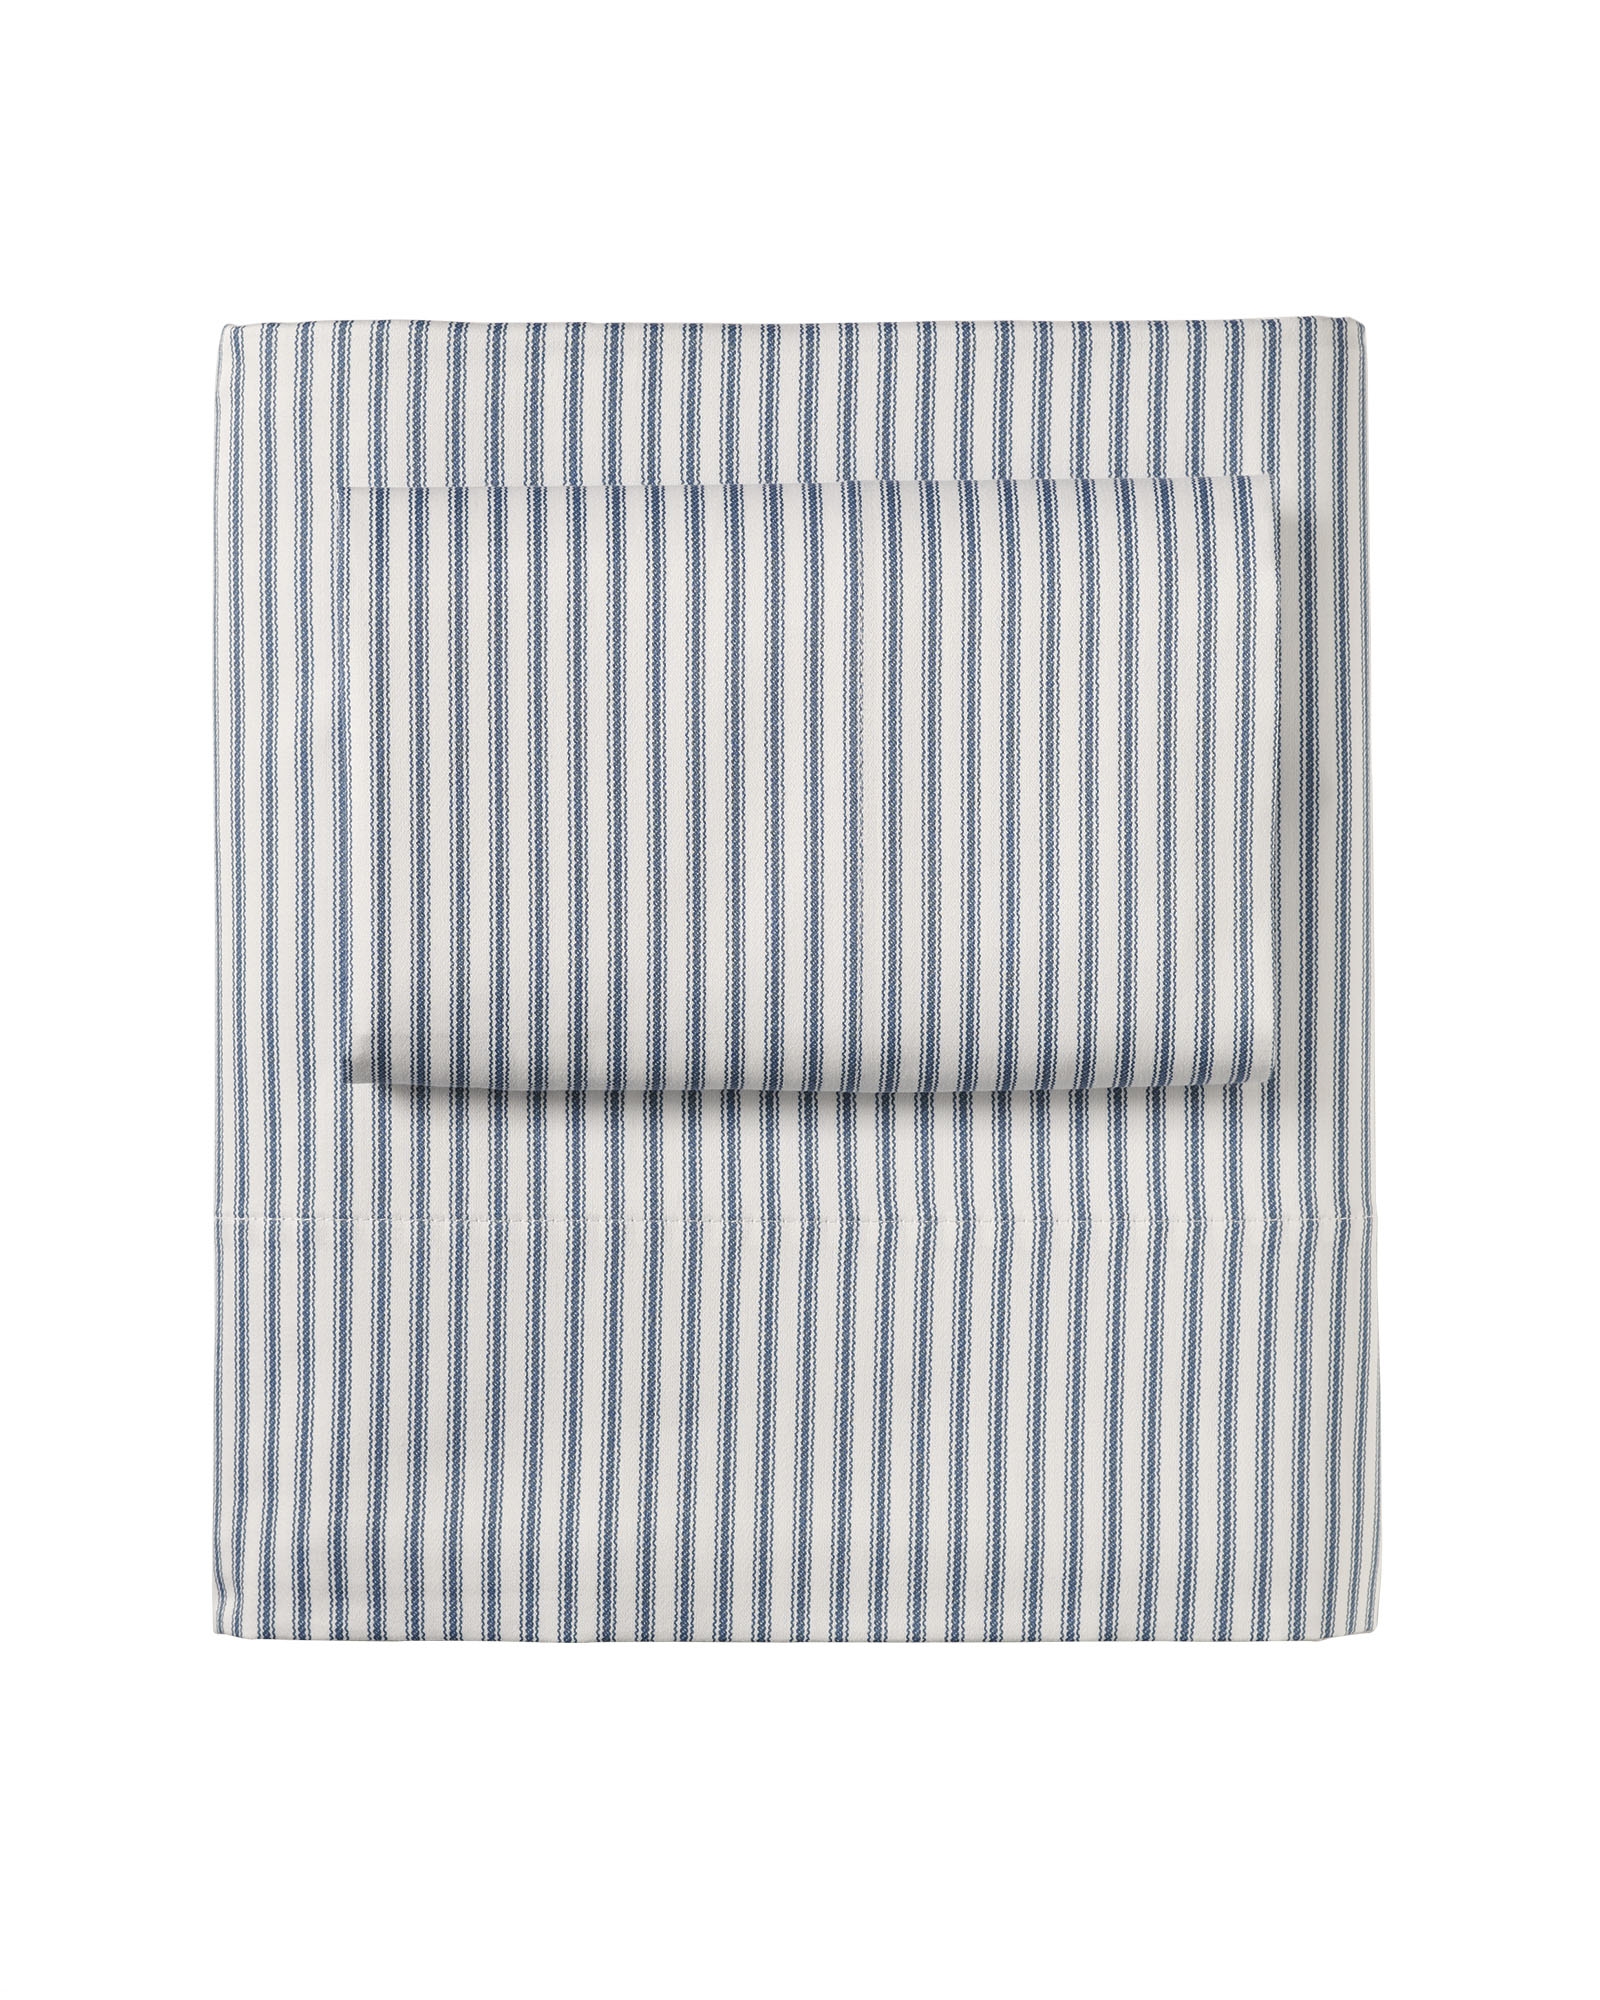 Ticking Stripe Sheet Set - Queen - Image 1